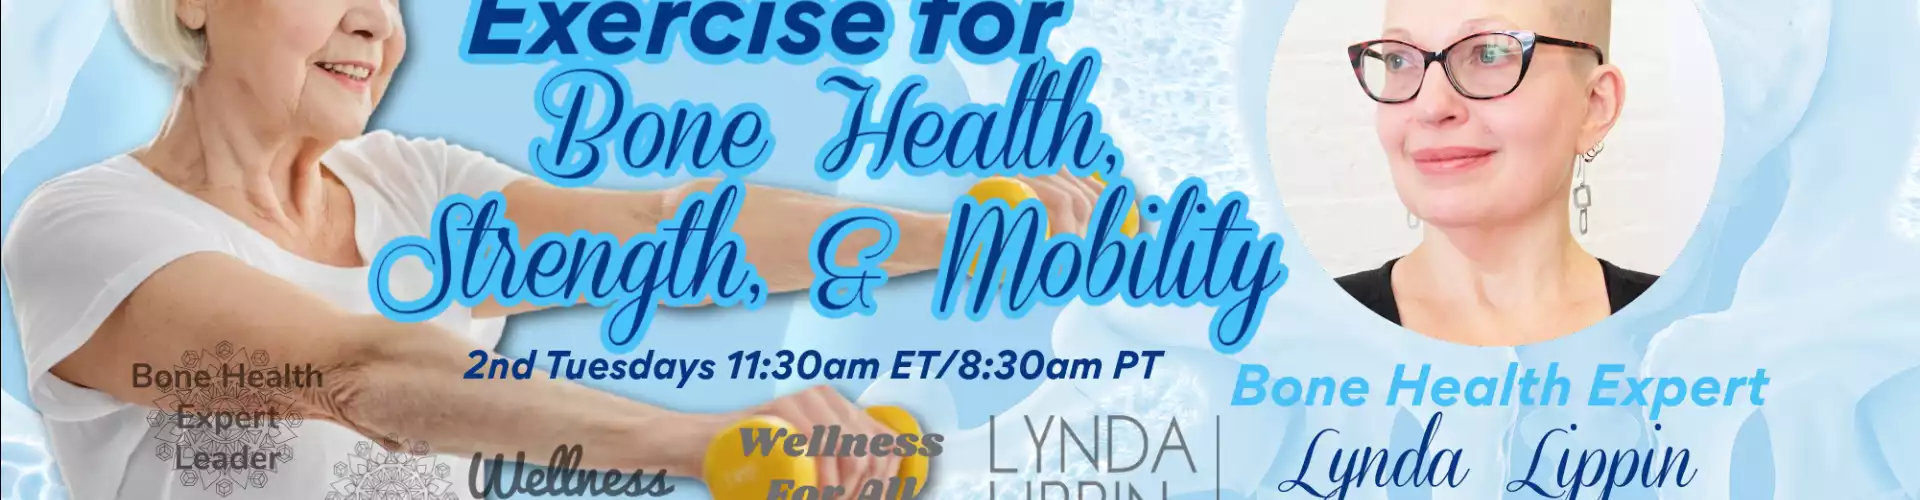 与 WU 专家 Lynda Lippin 一起锻炼骨骼健康、力量和活动能力